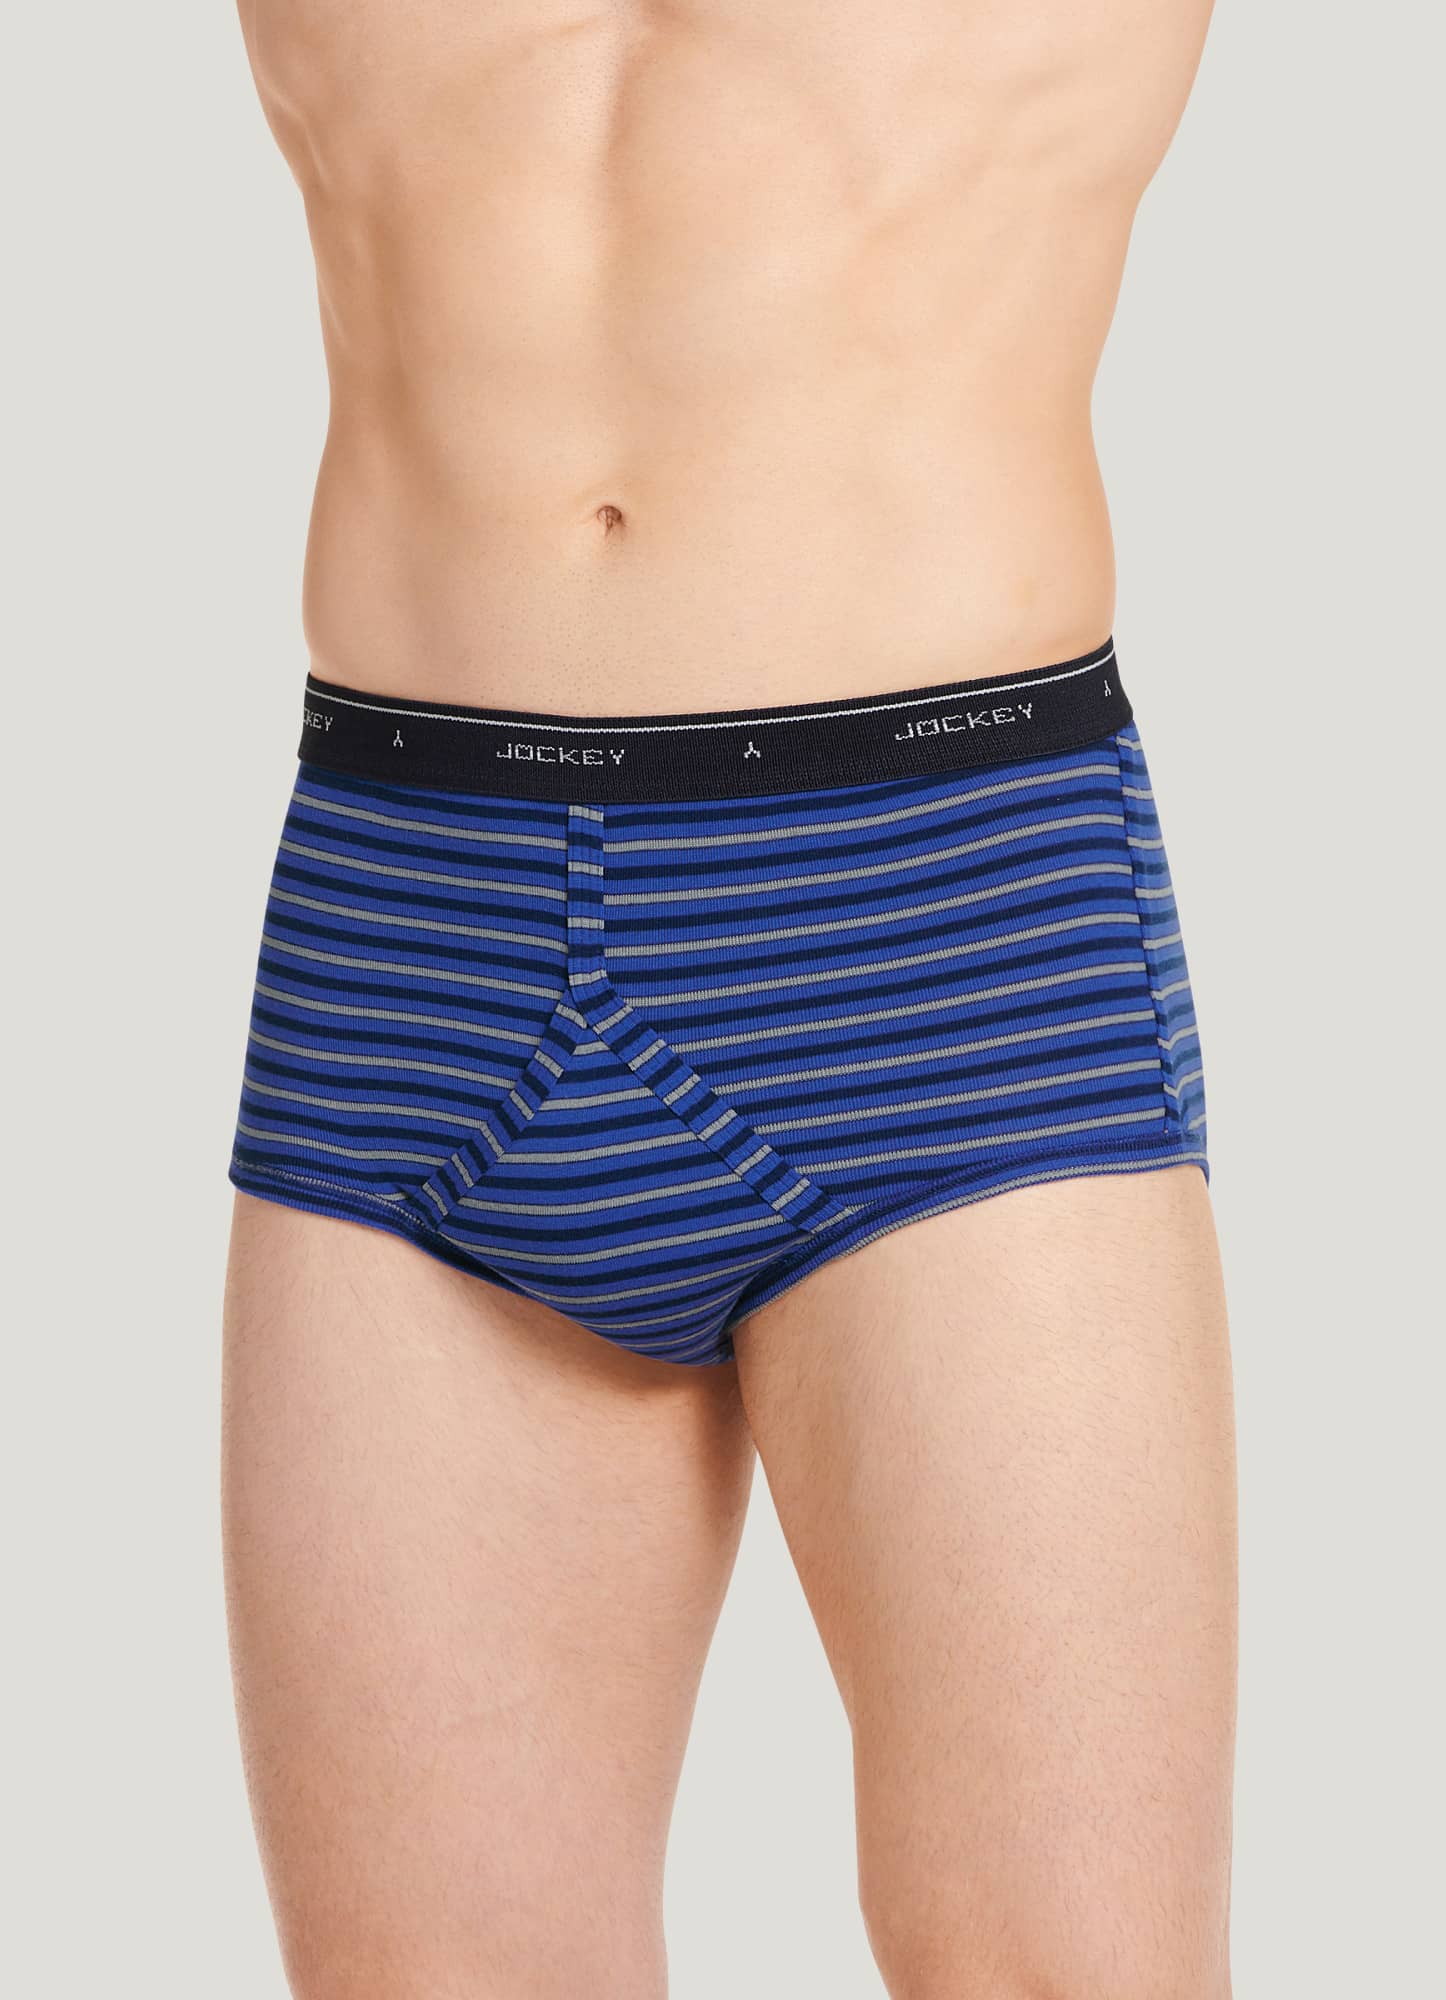 Hanes Men's Underwear Briefs Pack, Mid-Rise Cotton Moisture-Wicking  Underwear Briefs, 6-Pack